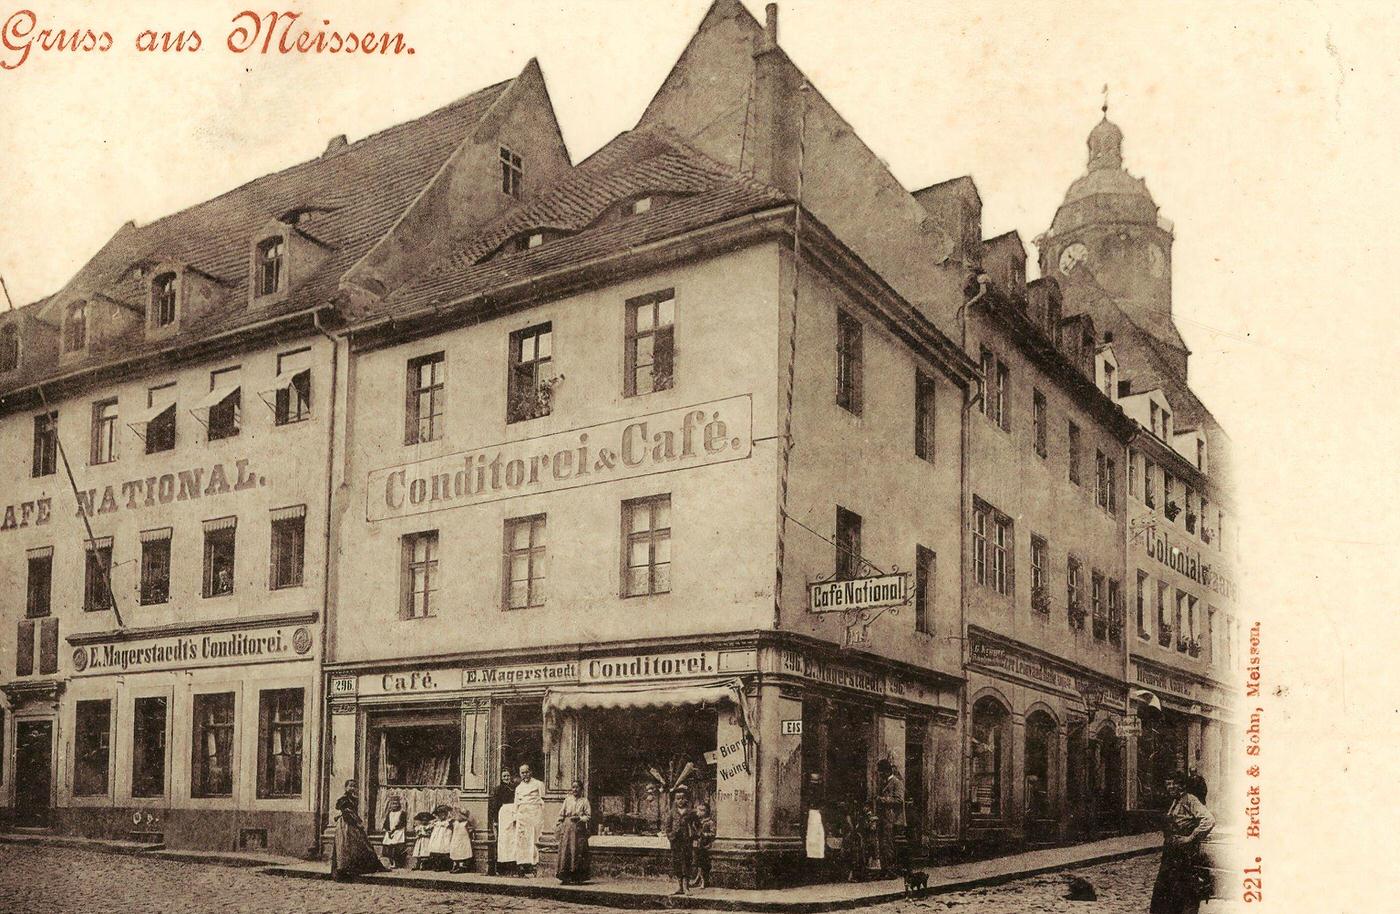 Cafes in Saxony, Frauenkirche in Meissen, 1900s, Germany.